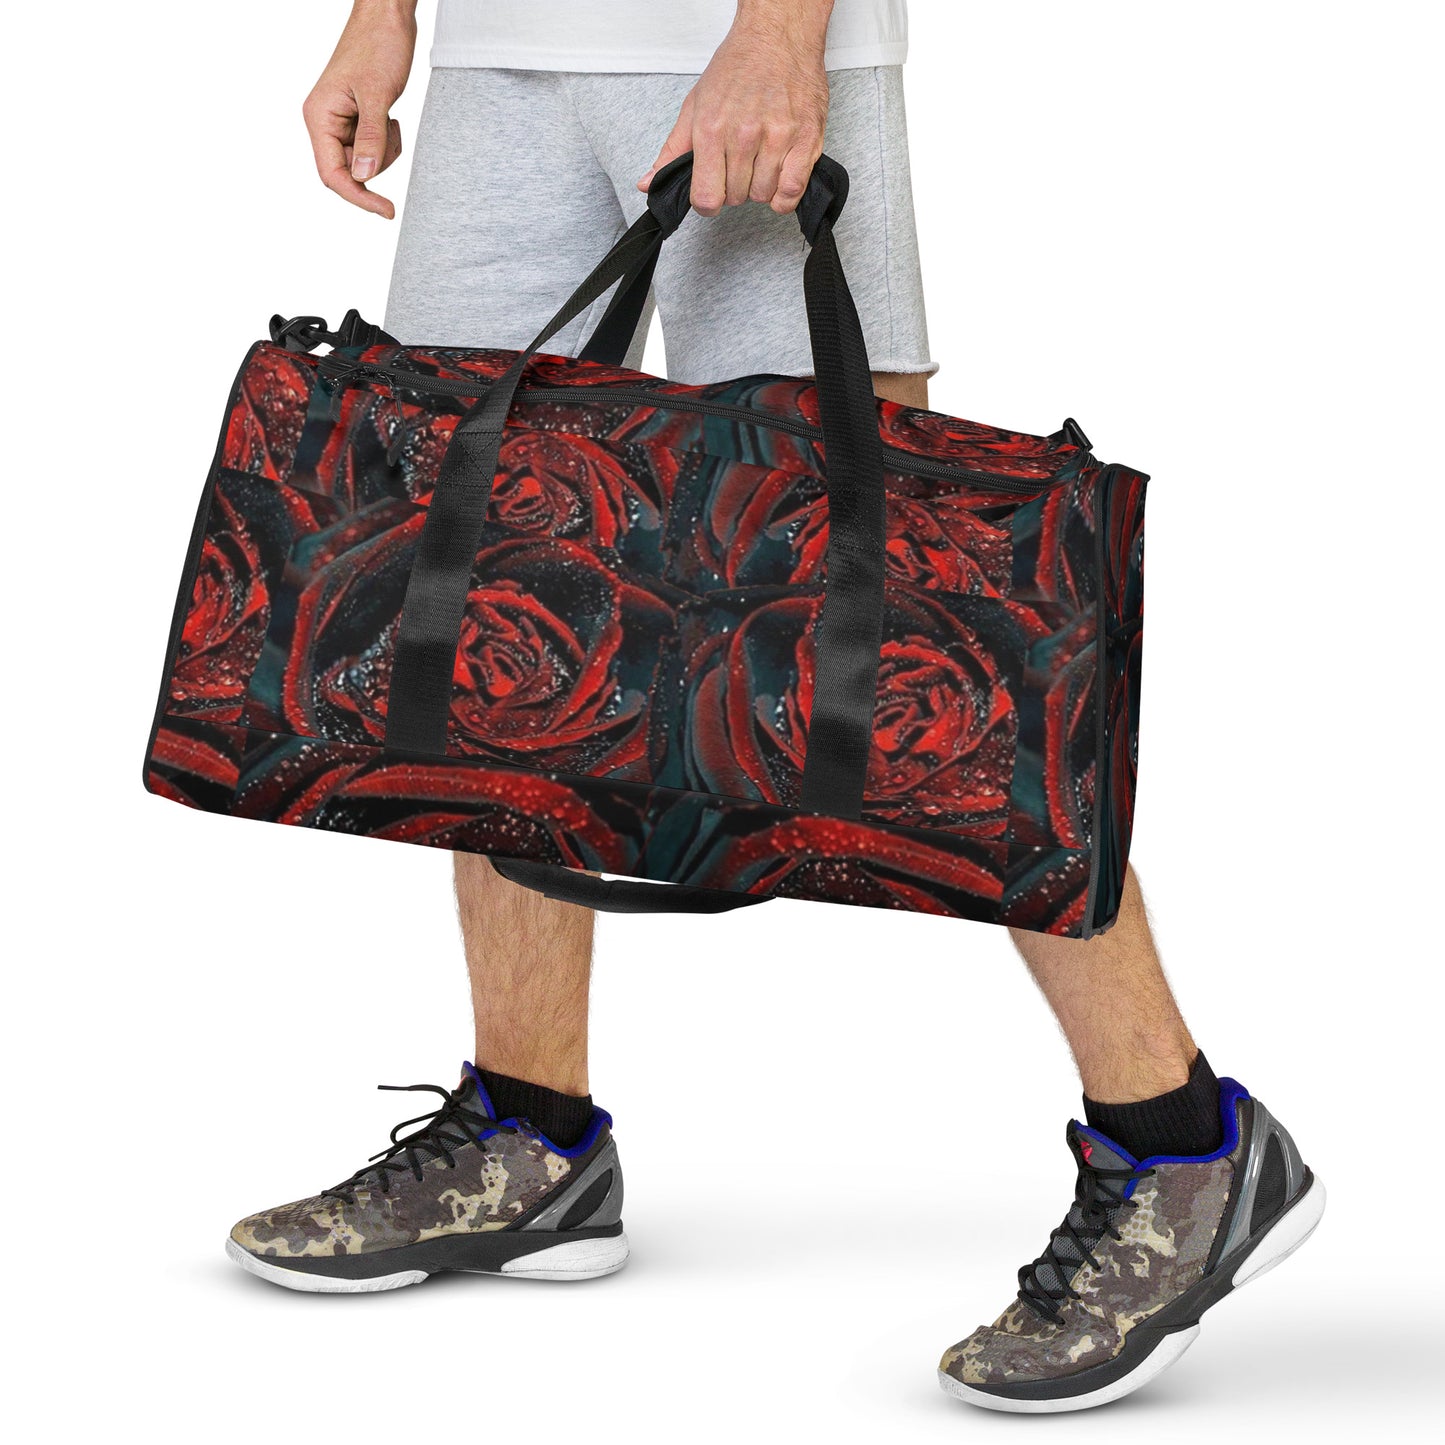 Red Rose Duffle Bag